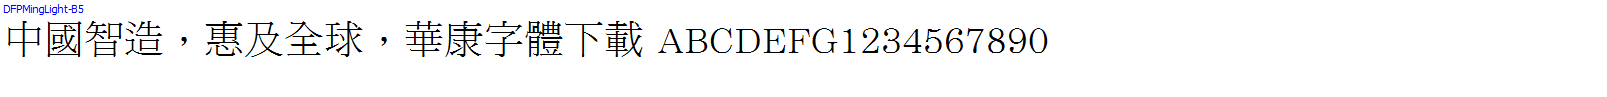 華康字體DFPMingLight-B5.TTF